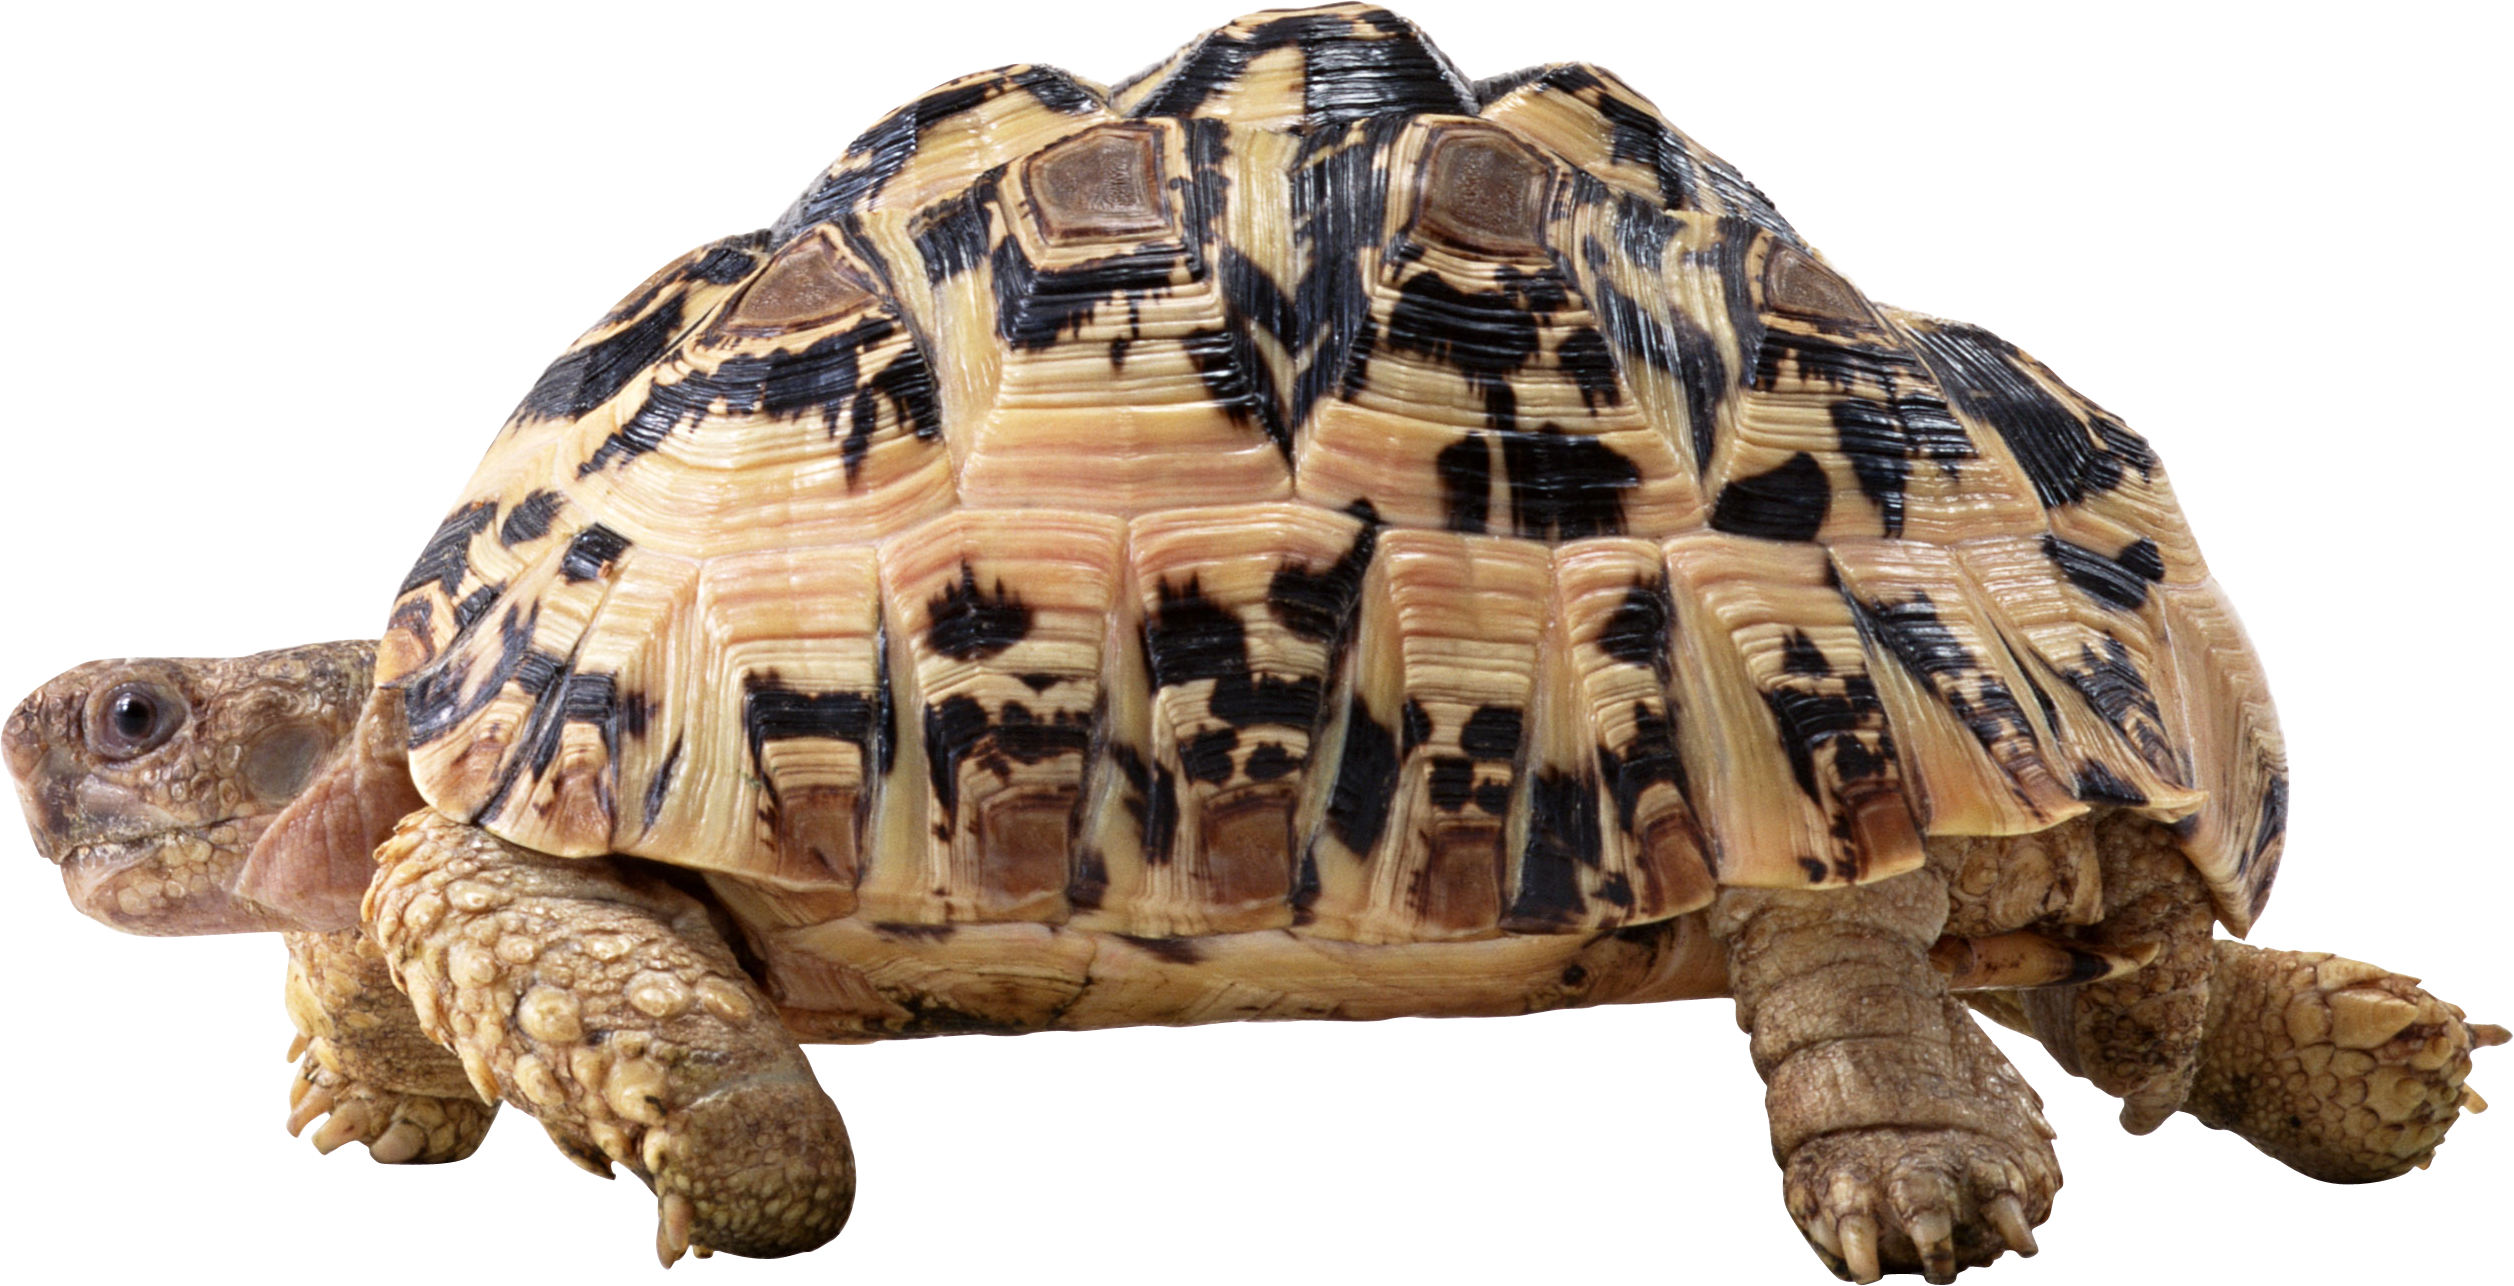 Черепаха PNG изображение с прозрачным фоном